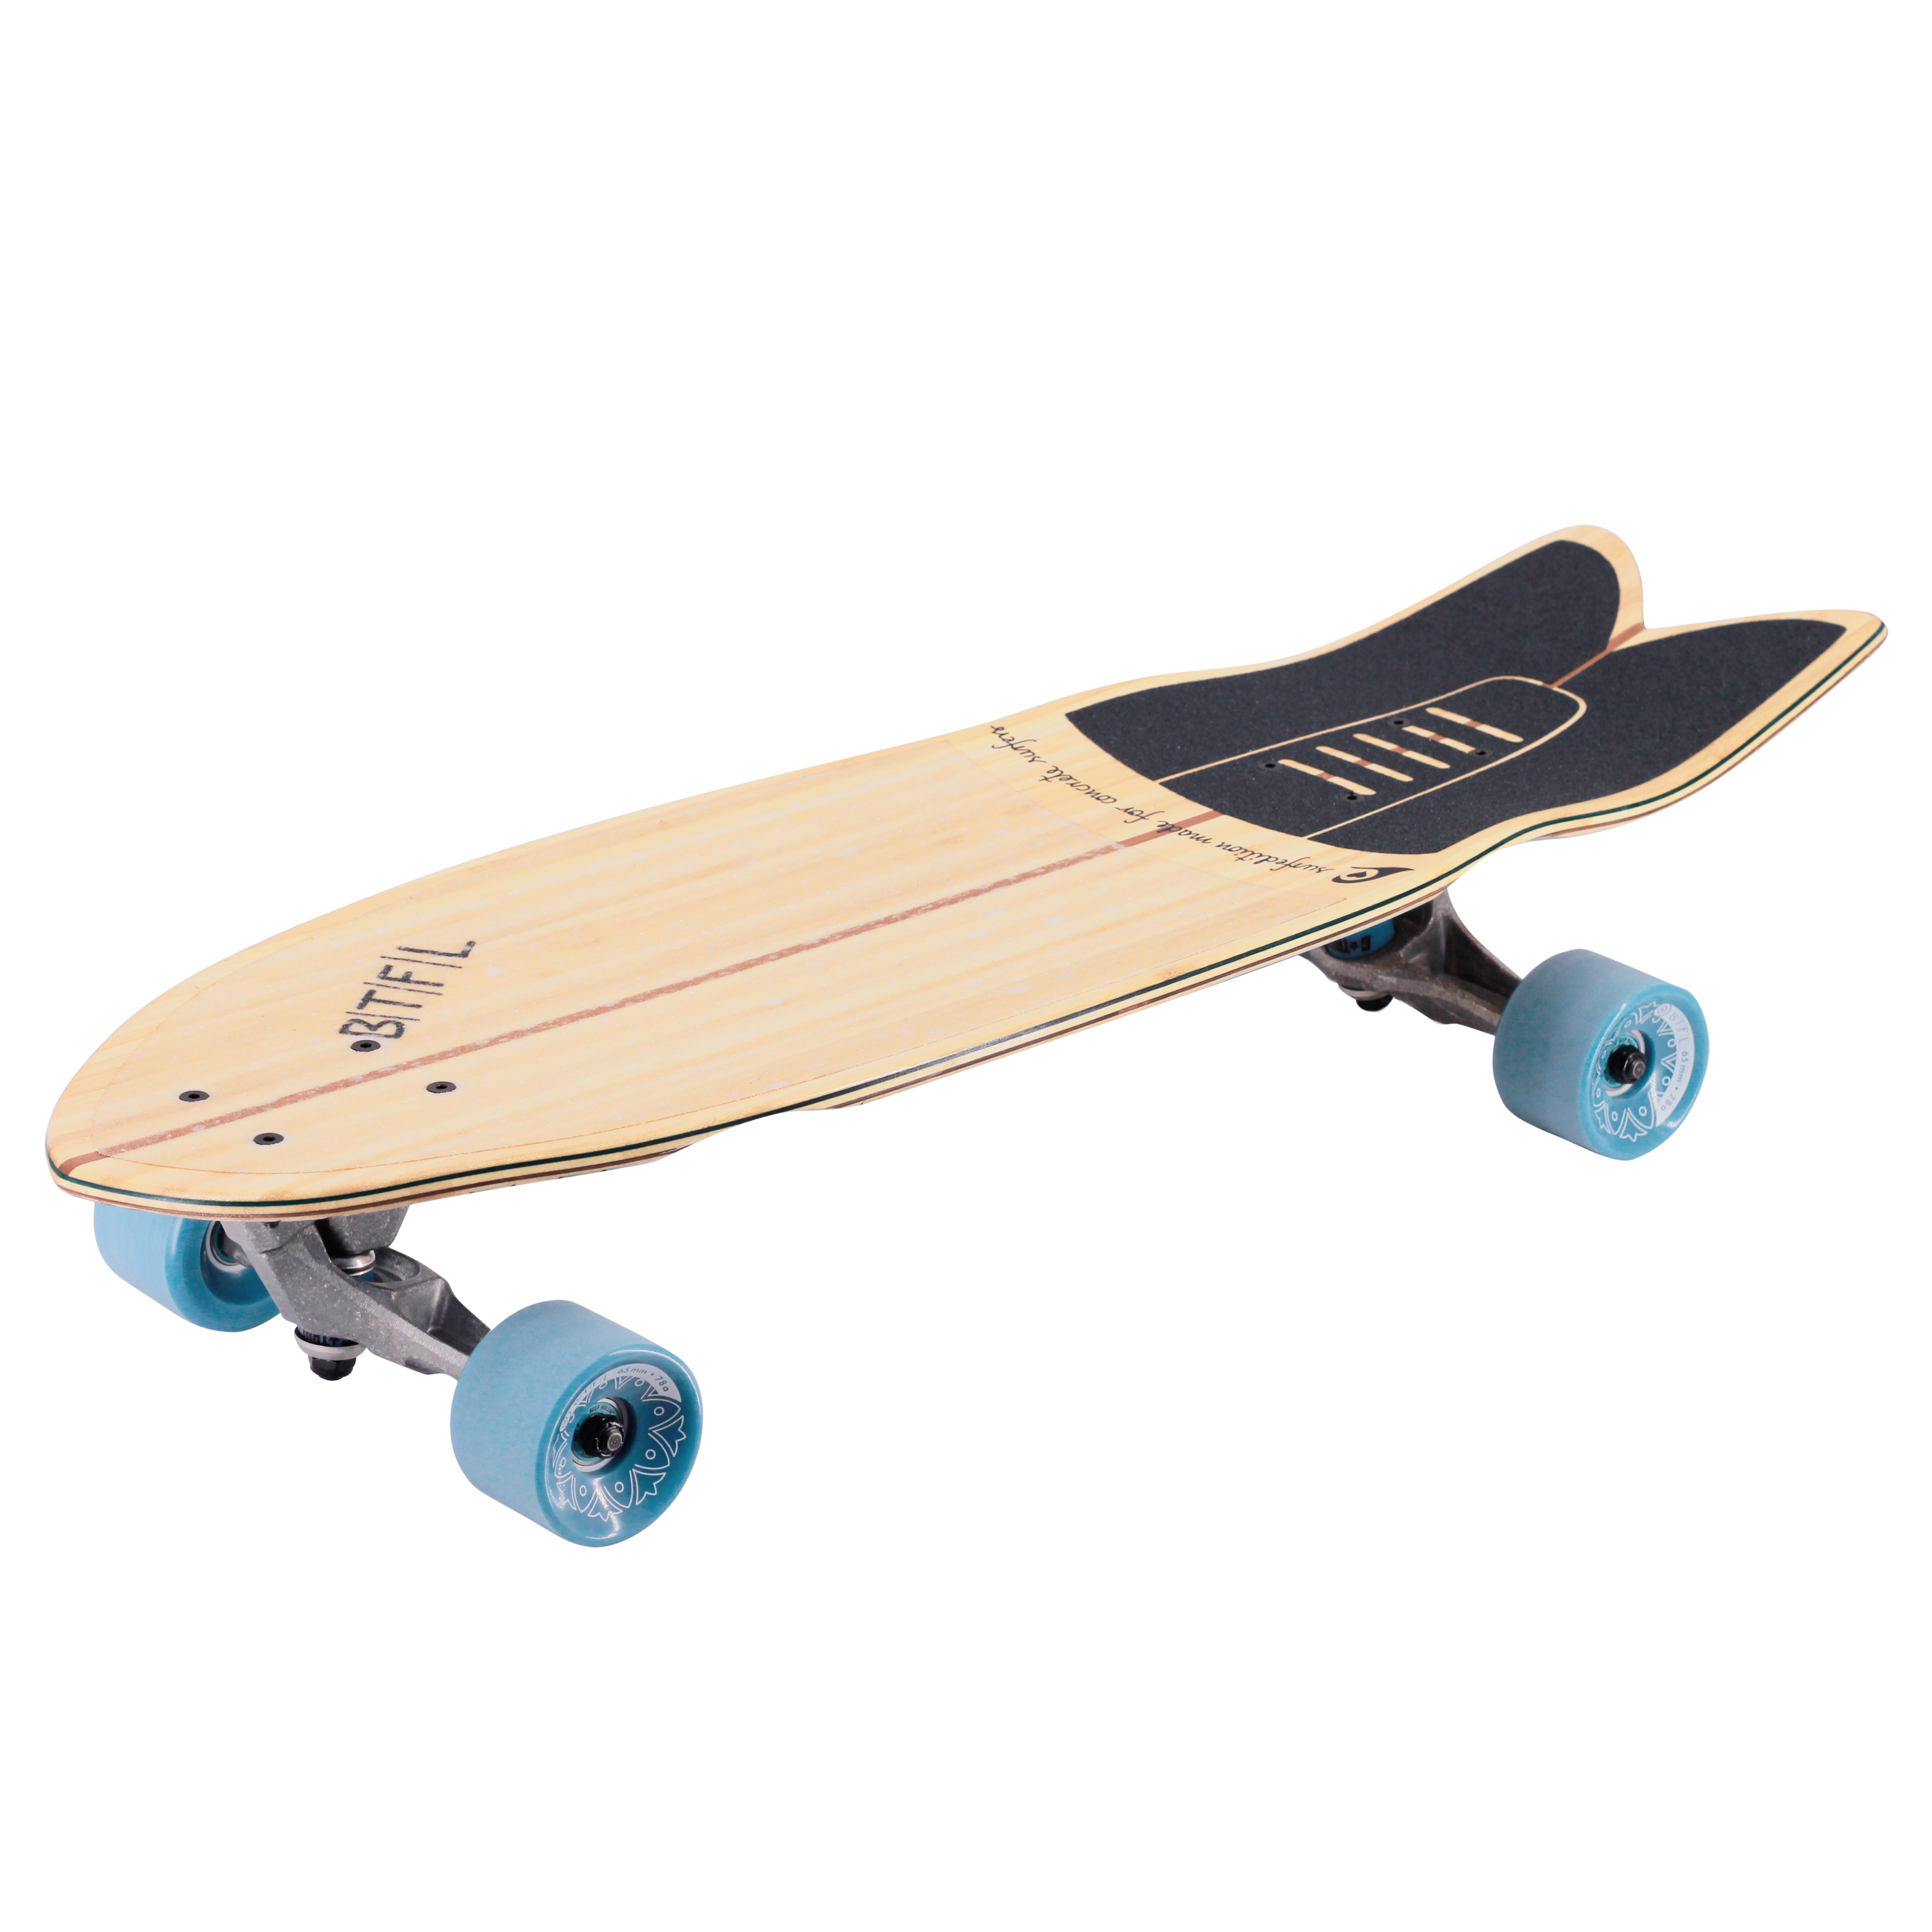 BTFL Surfskate Moby Complete Longboard Carver Deck Surf Skate Cruiser 